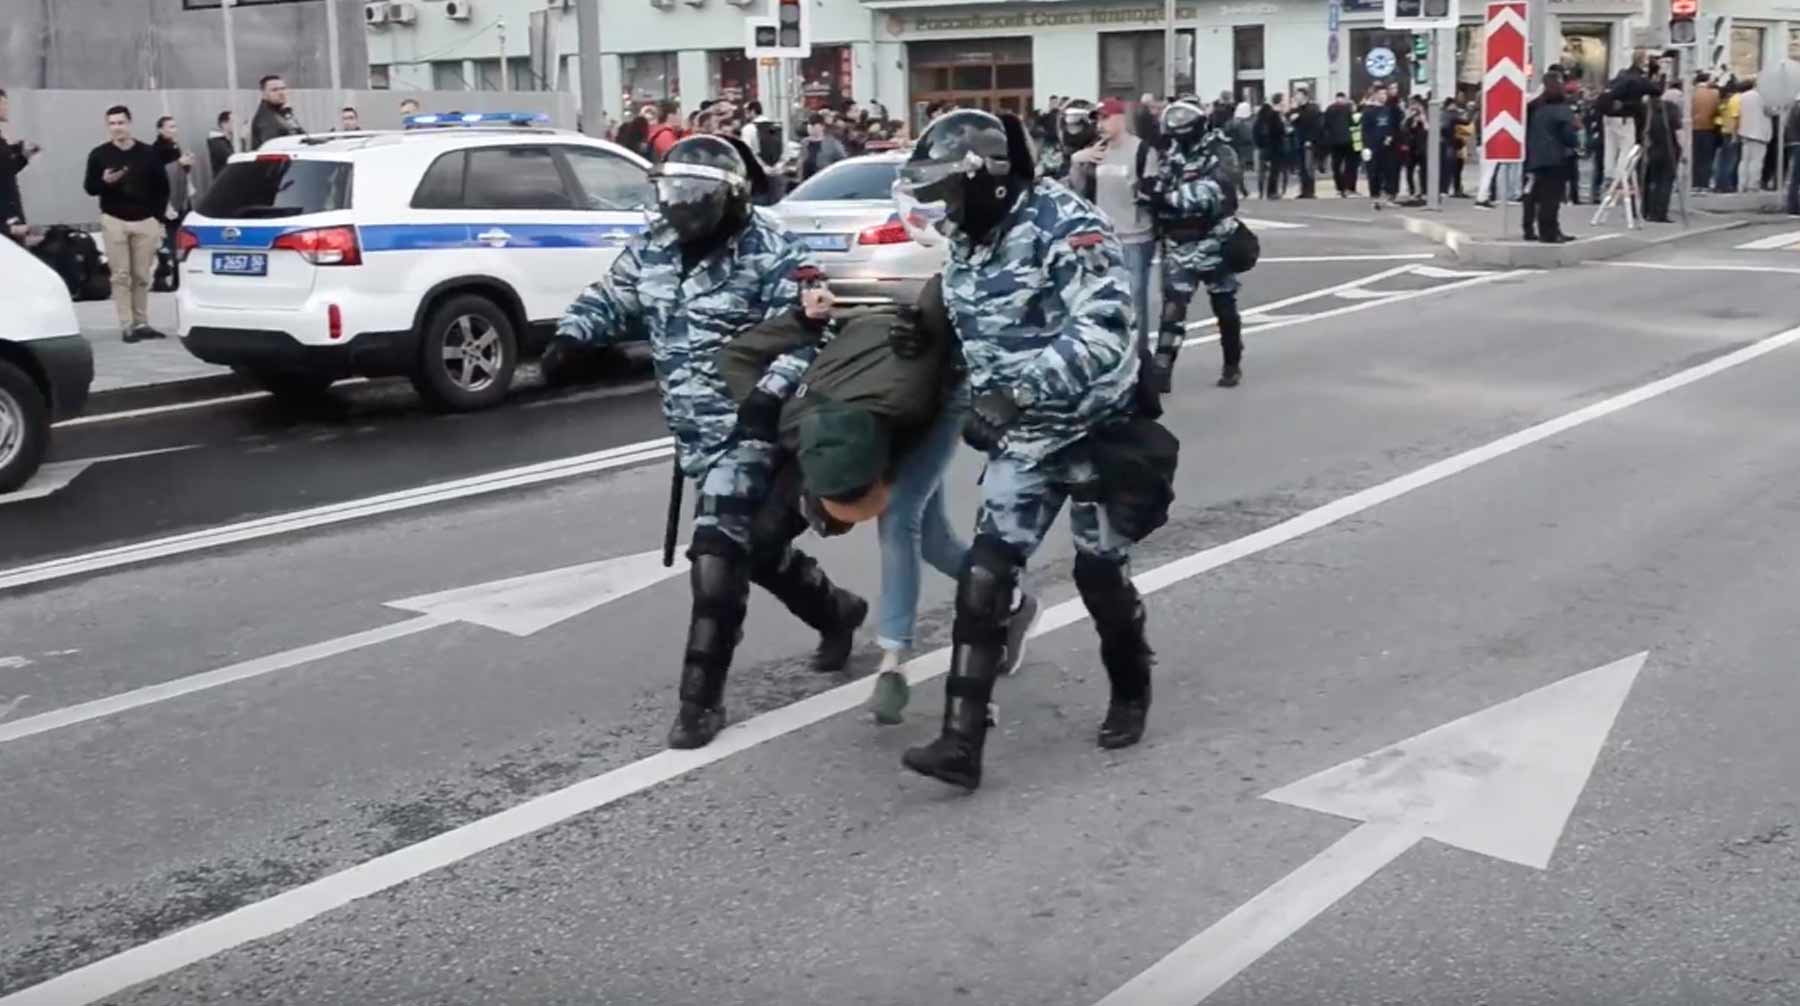 Задержания начались на несанкционированной акции после официального окончания мероприятия Кадр: © youtube / Радио Свобода